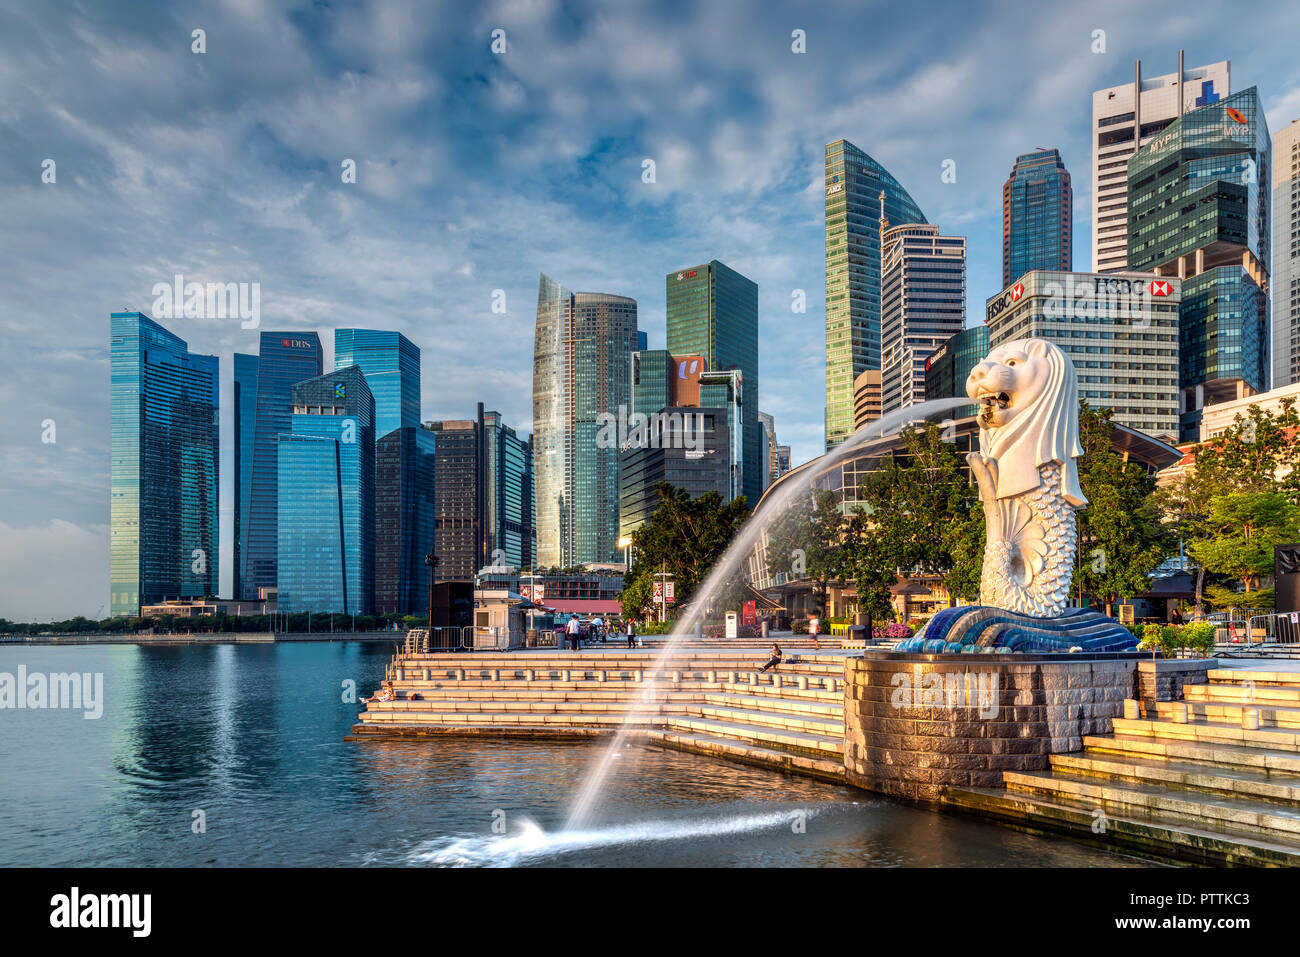 La statue du Merlion avec ville en arrière-plan, Marina Bay, Singapour Banque D'Images